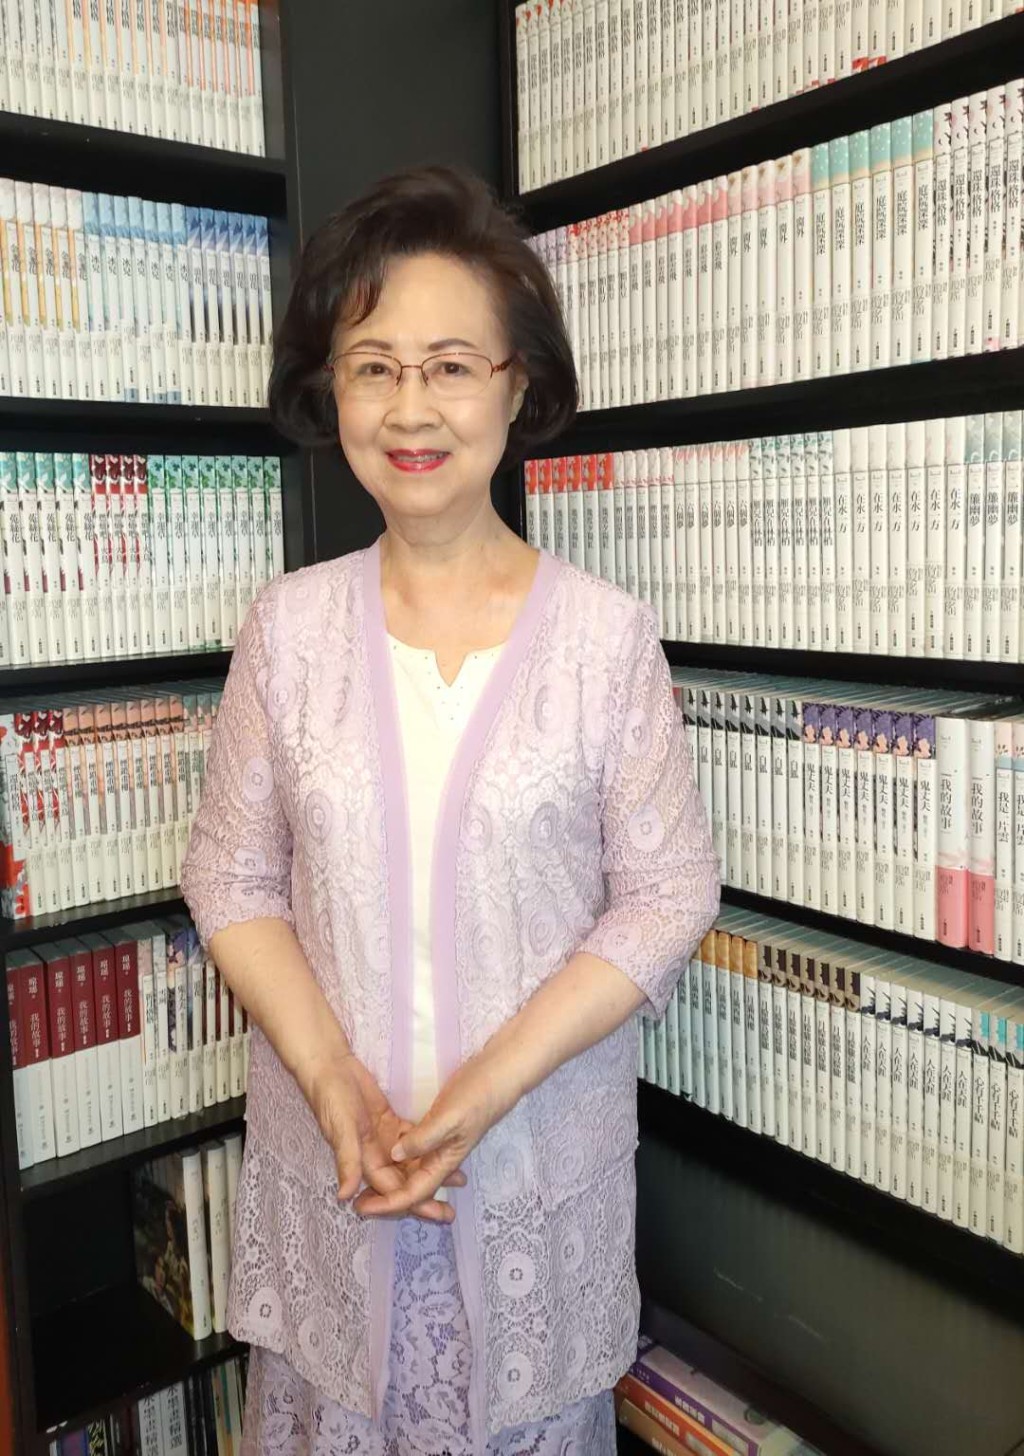 琼瑶是台湾知名作家。